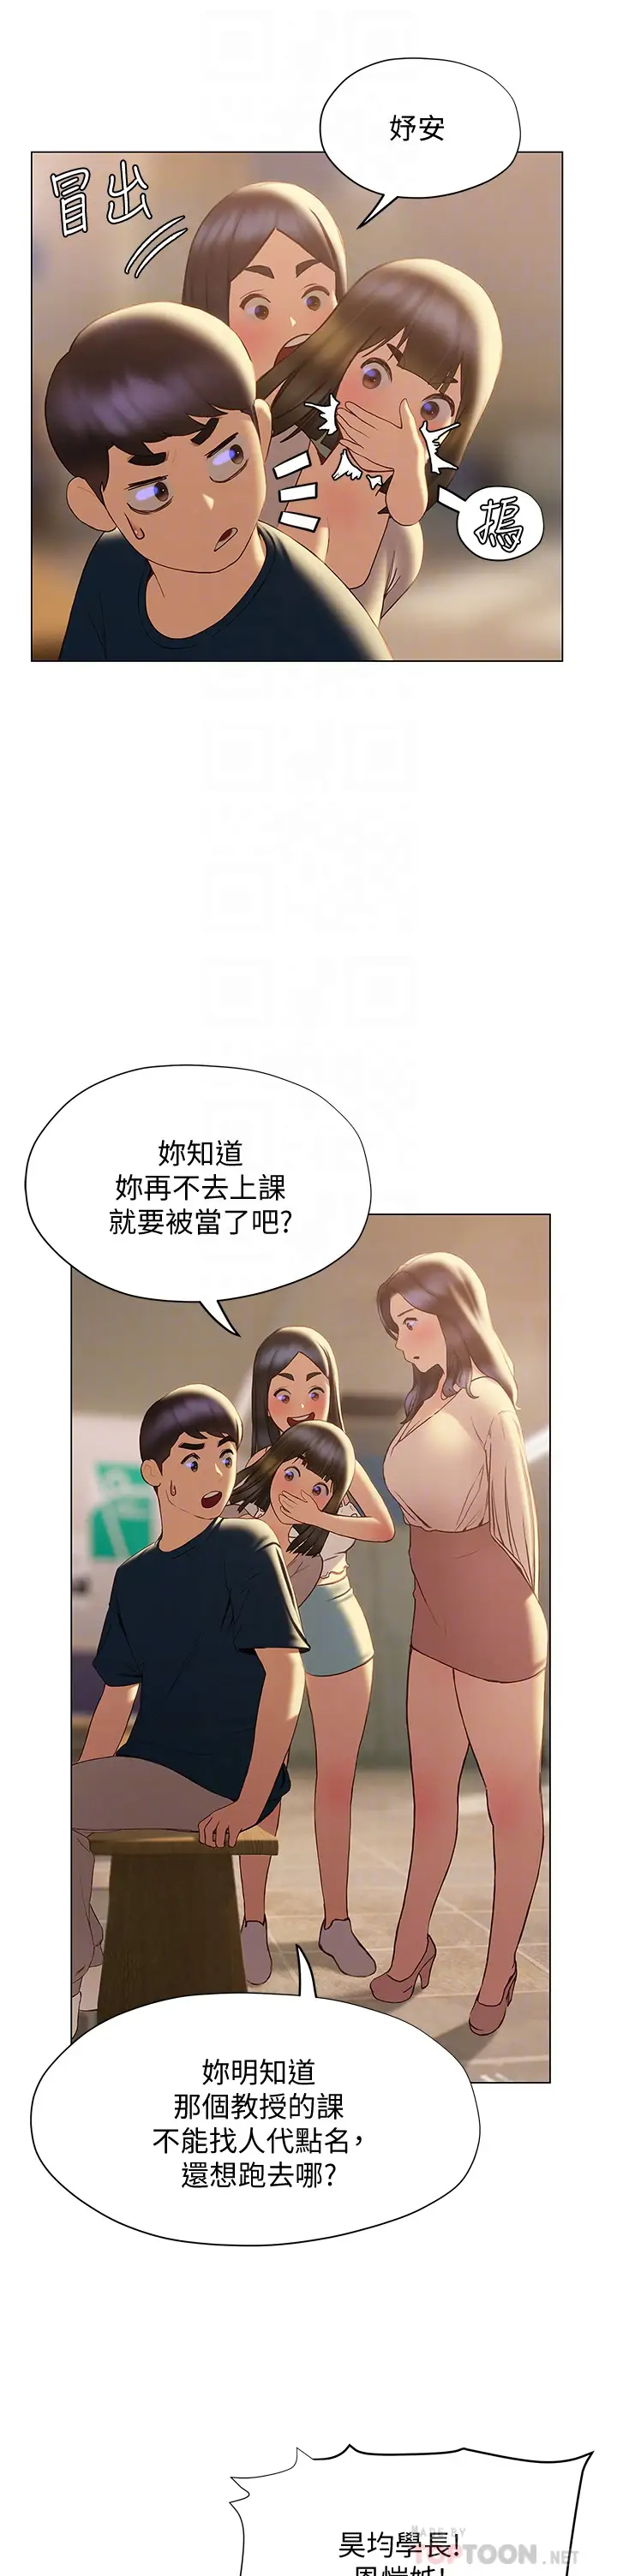 韩国污漫画 終曖昧結 第31话和浑身湿透的恩恺独处… 16